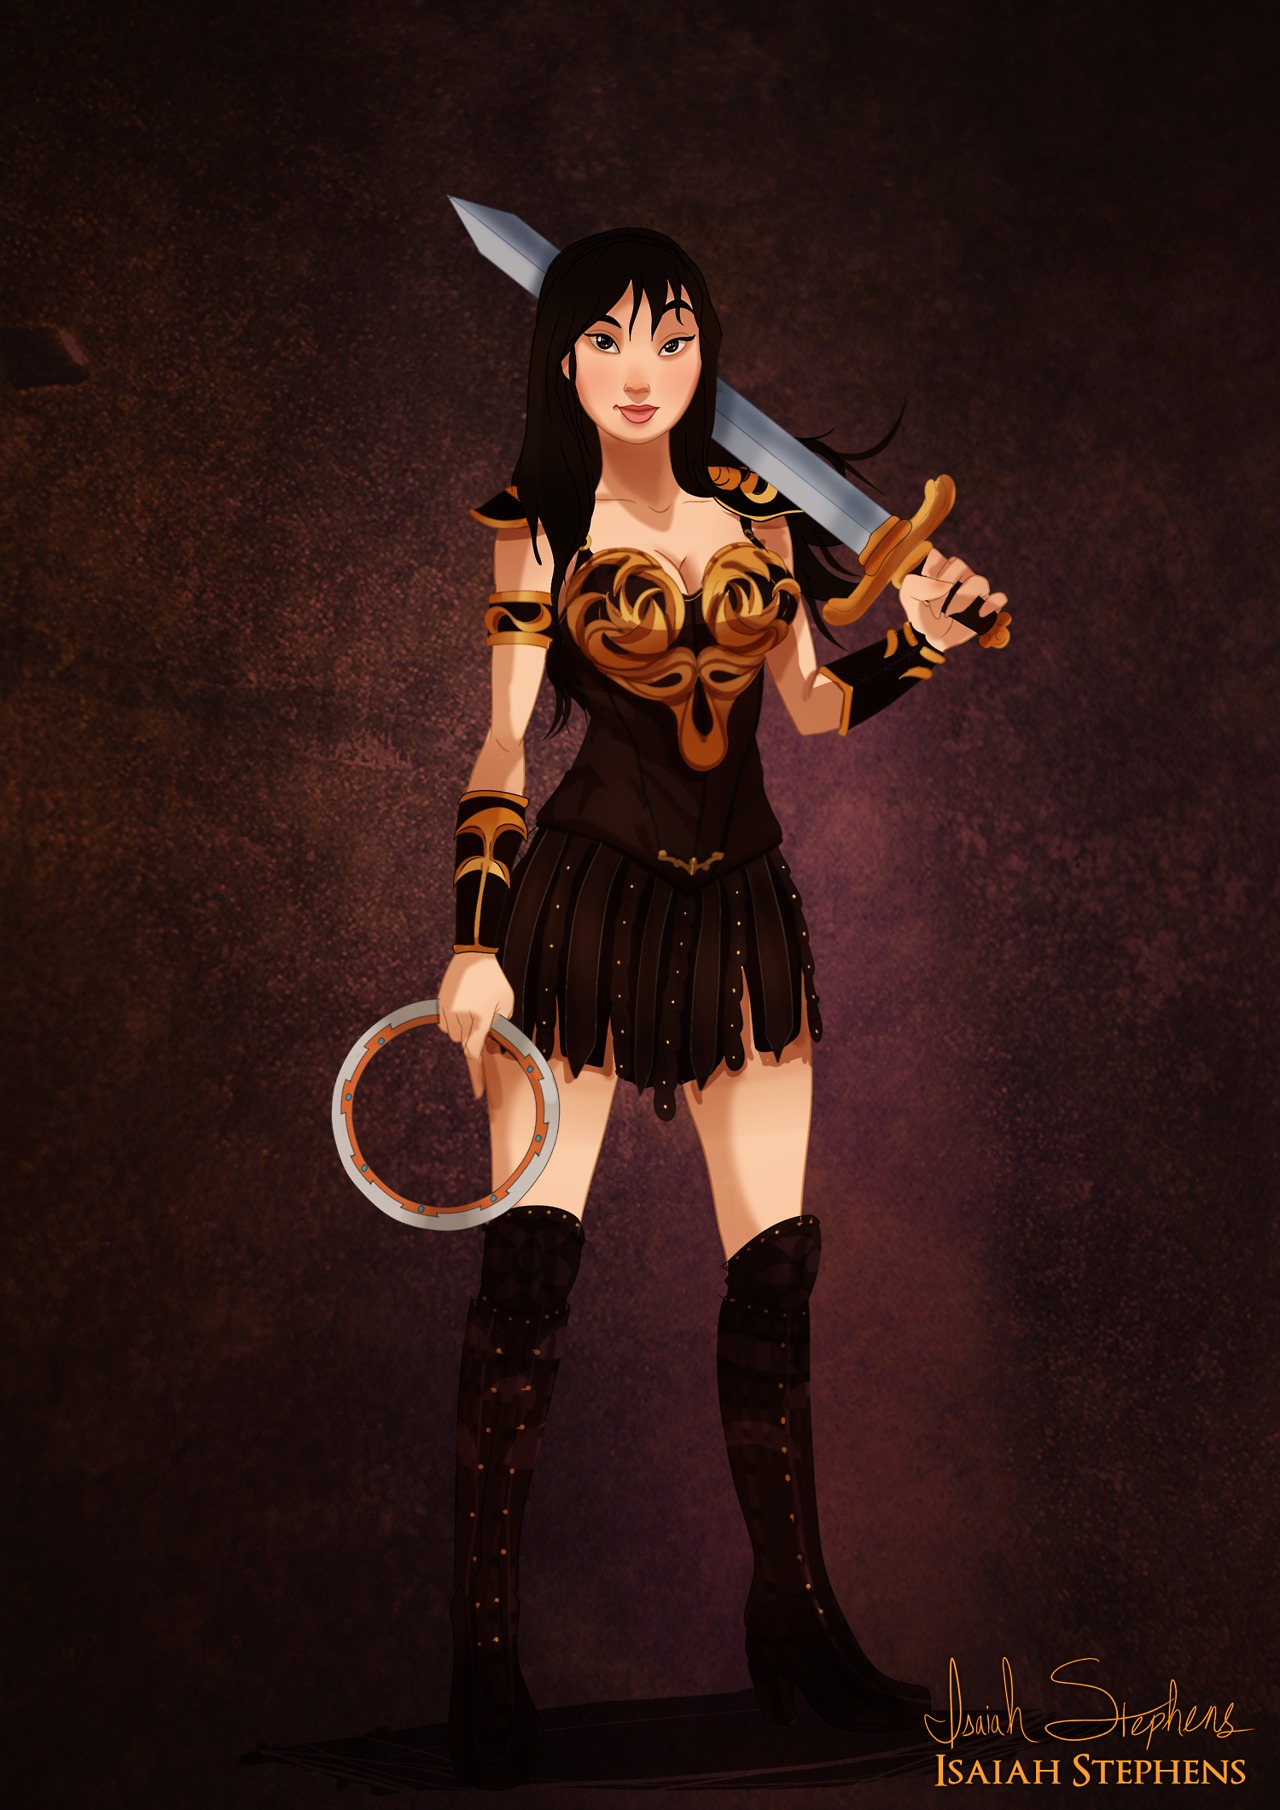 Disneys Mulan Cosplay Art As Xena The Warrior Princess By Isaiah